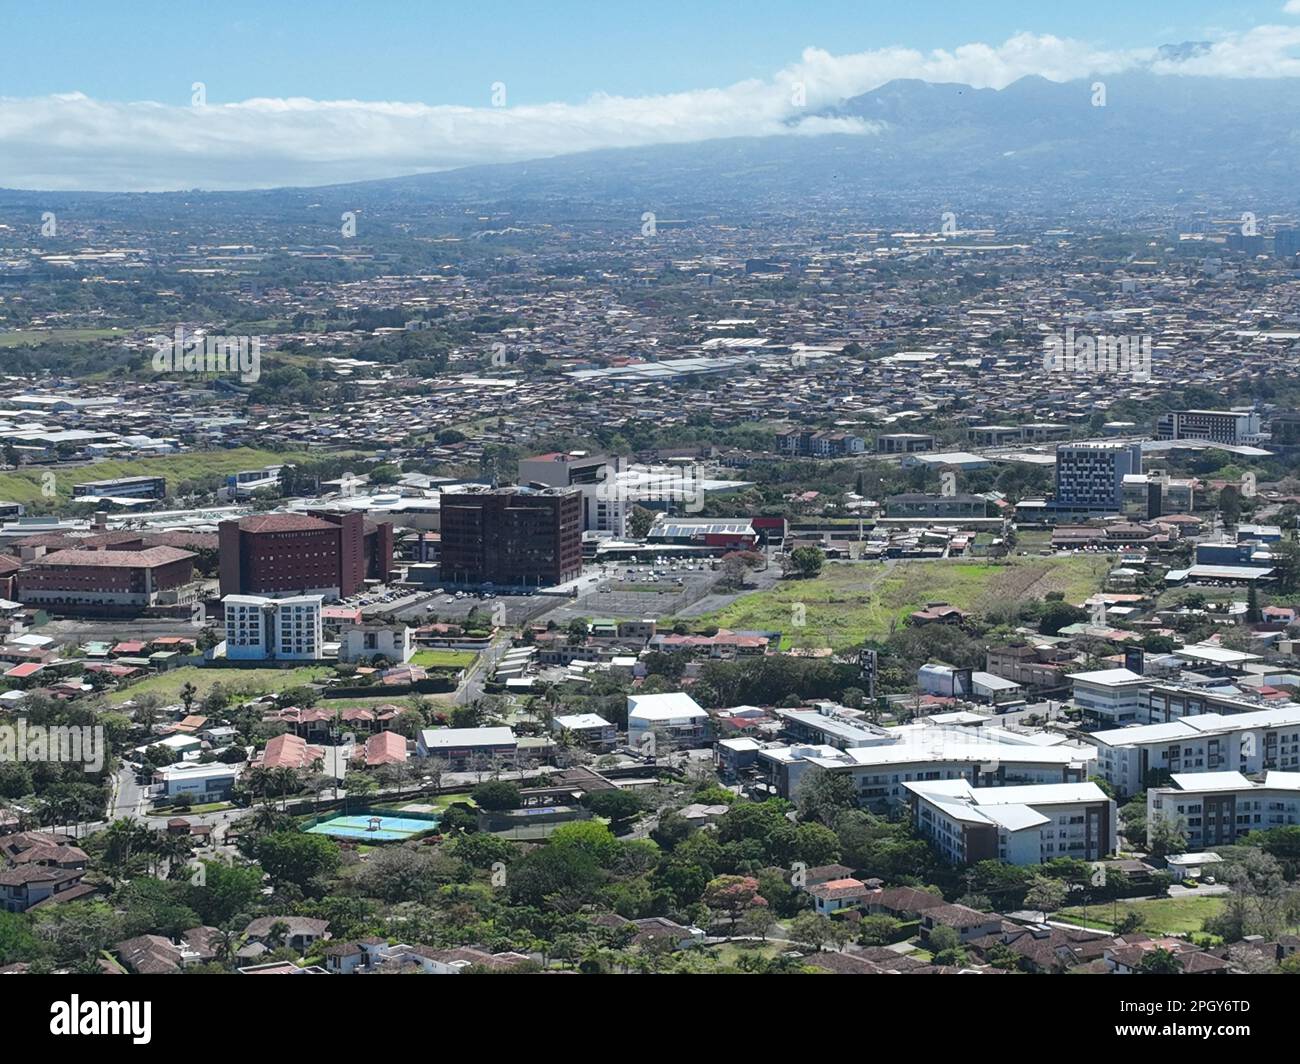 View of Escazu, Multiplaza, Plaza Roble, Distrito 4 and San Jose, Costa Rica Stock Photo